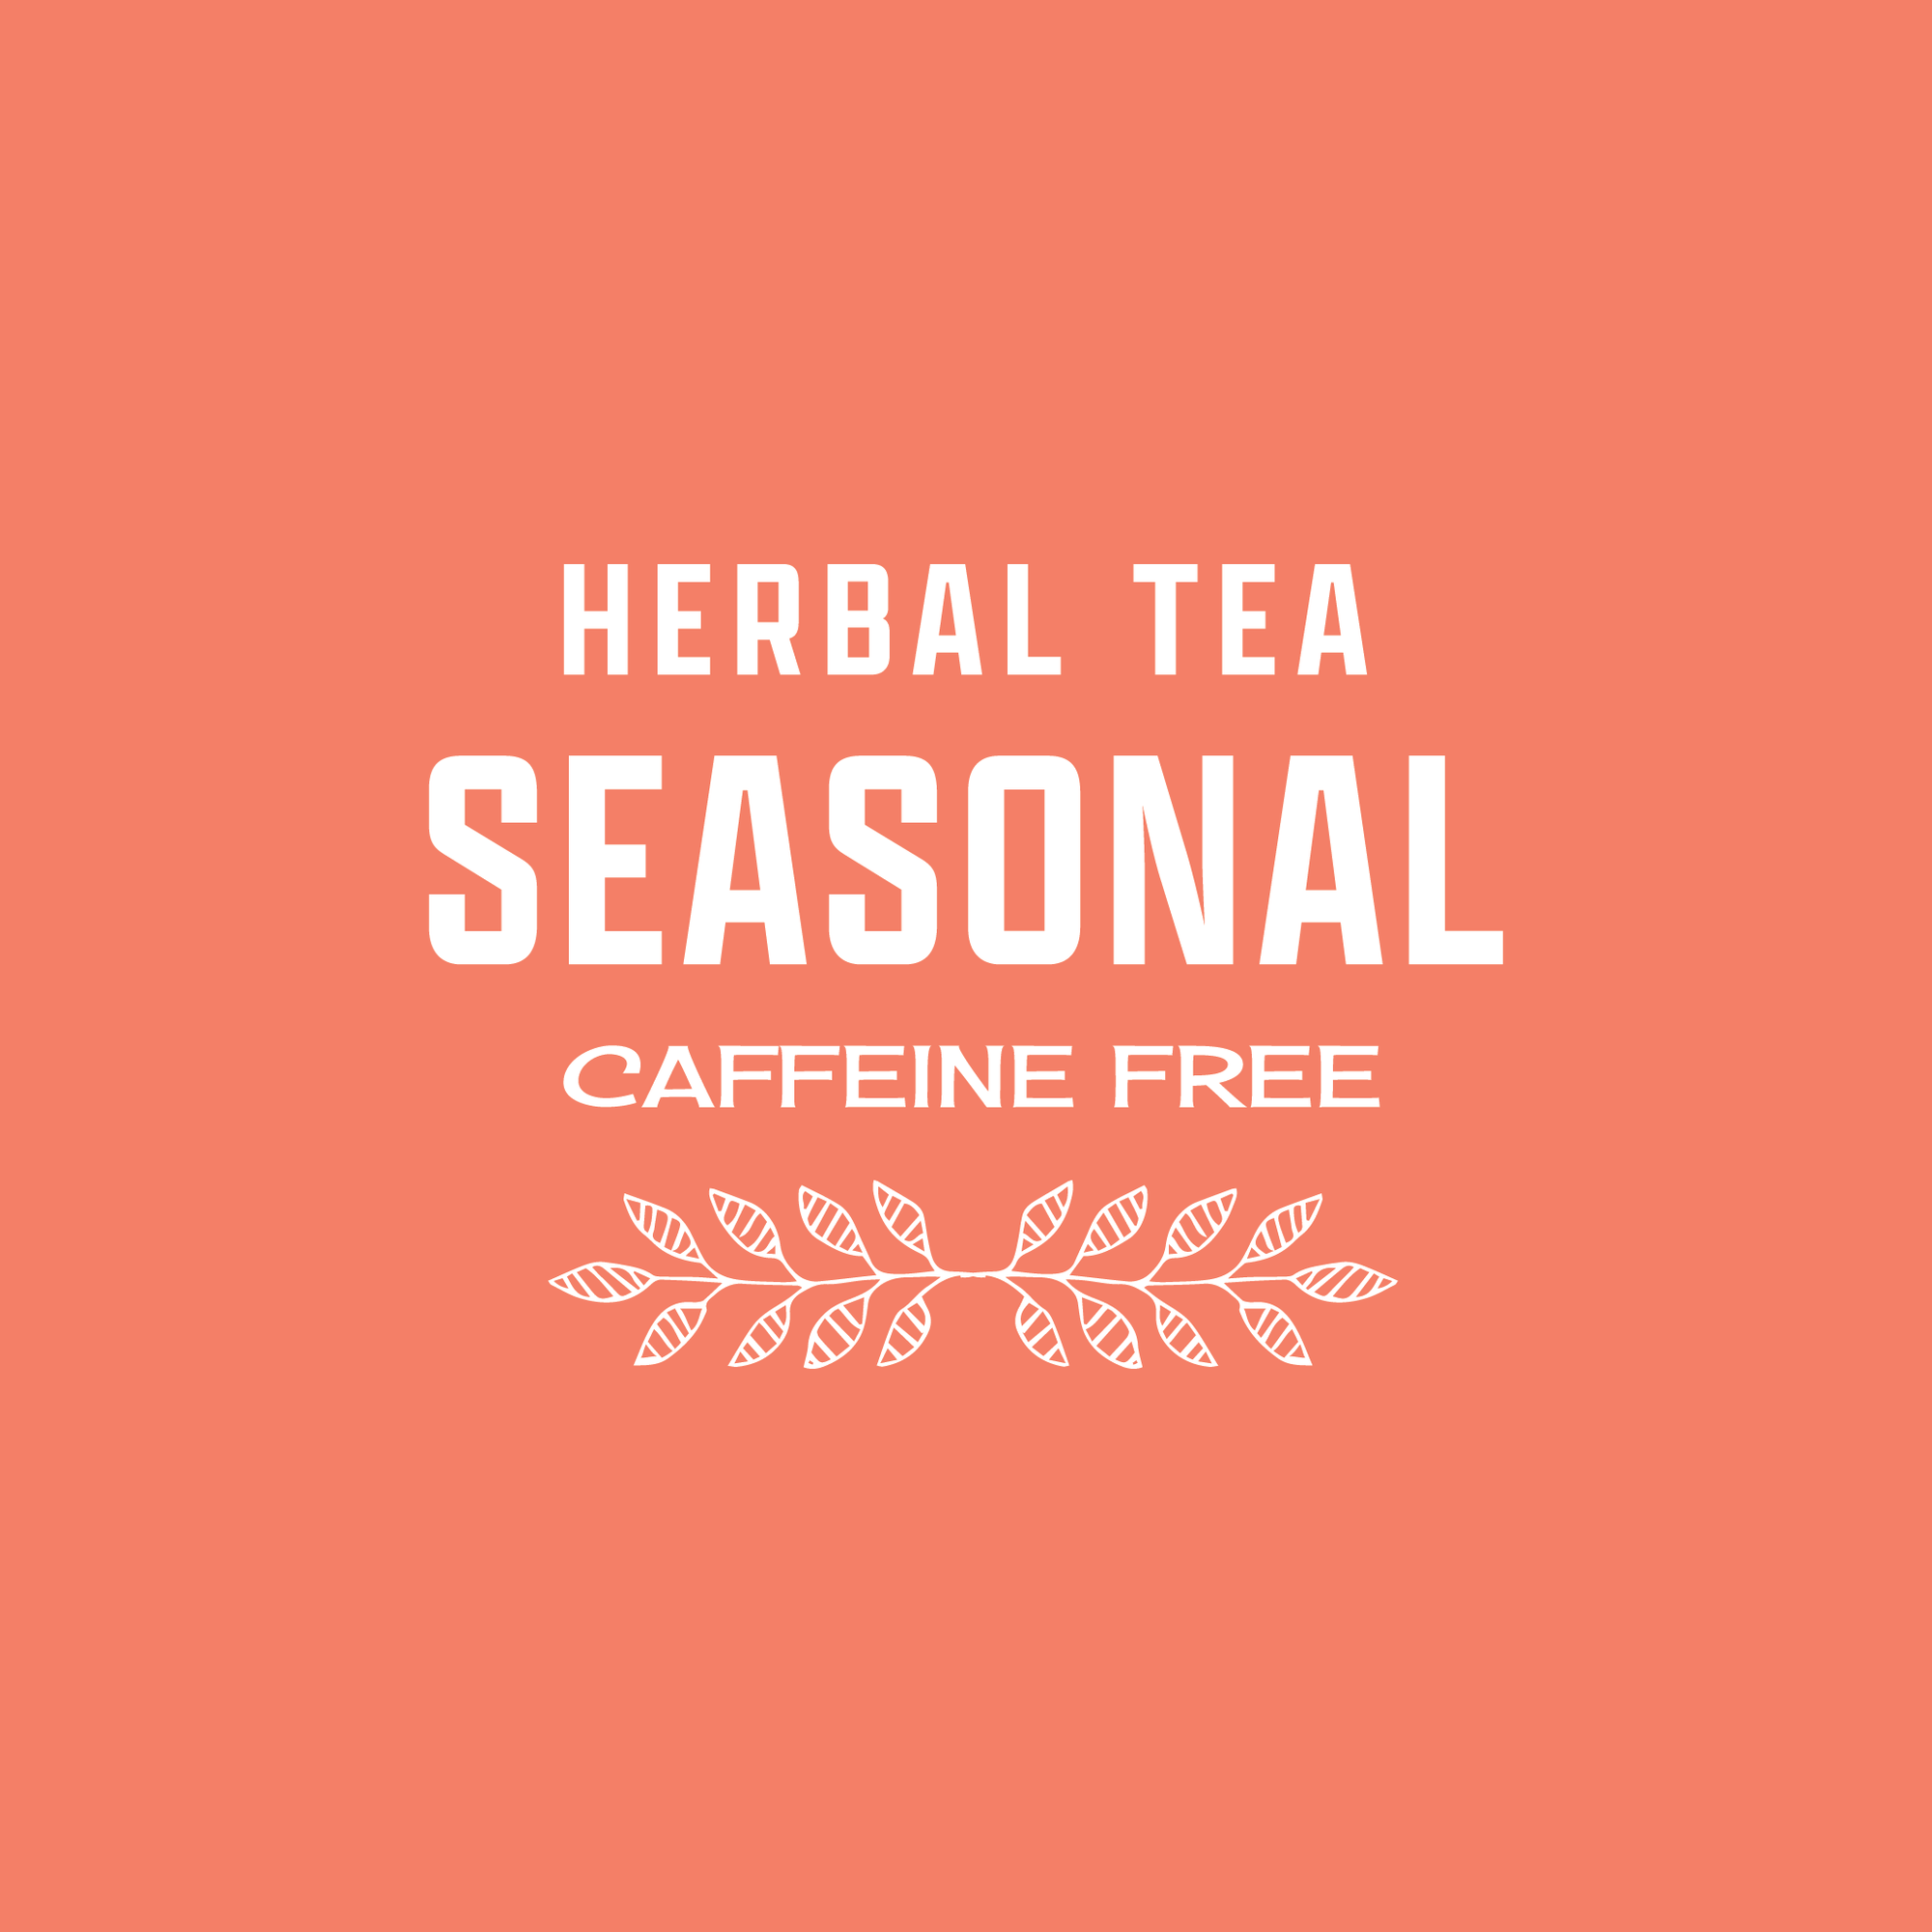 Seasonal Tea